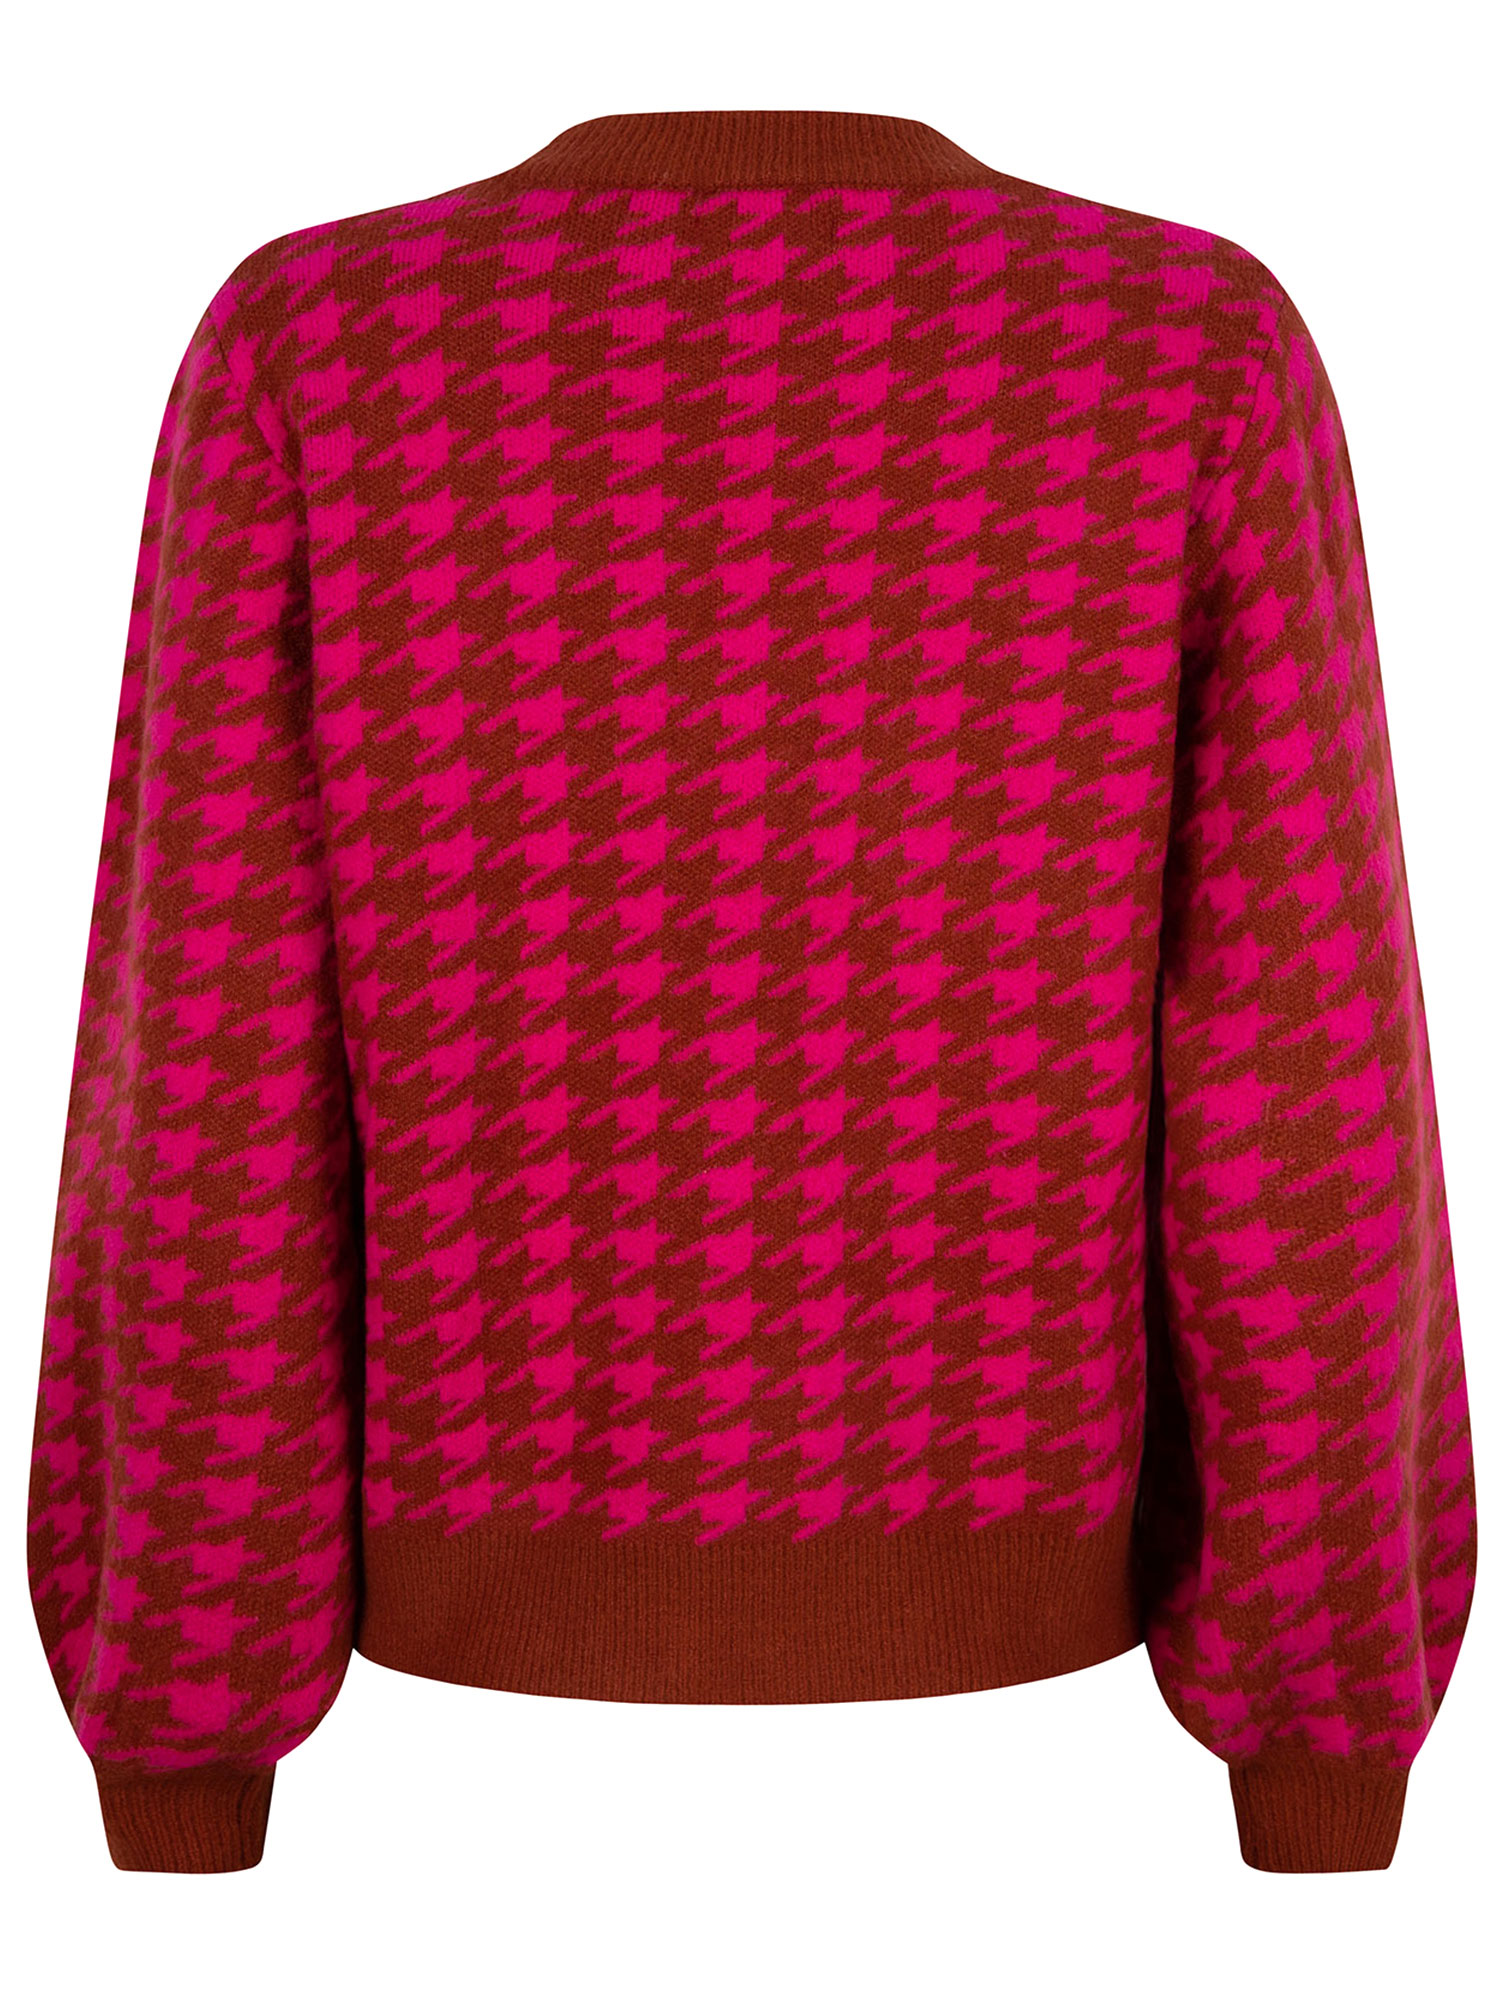 Ydence Knitted sweater Kimberly Fuchsia/rust